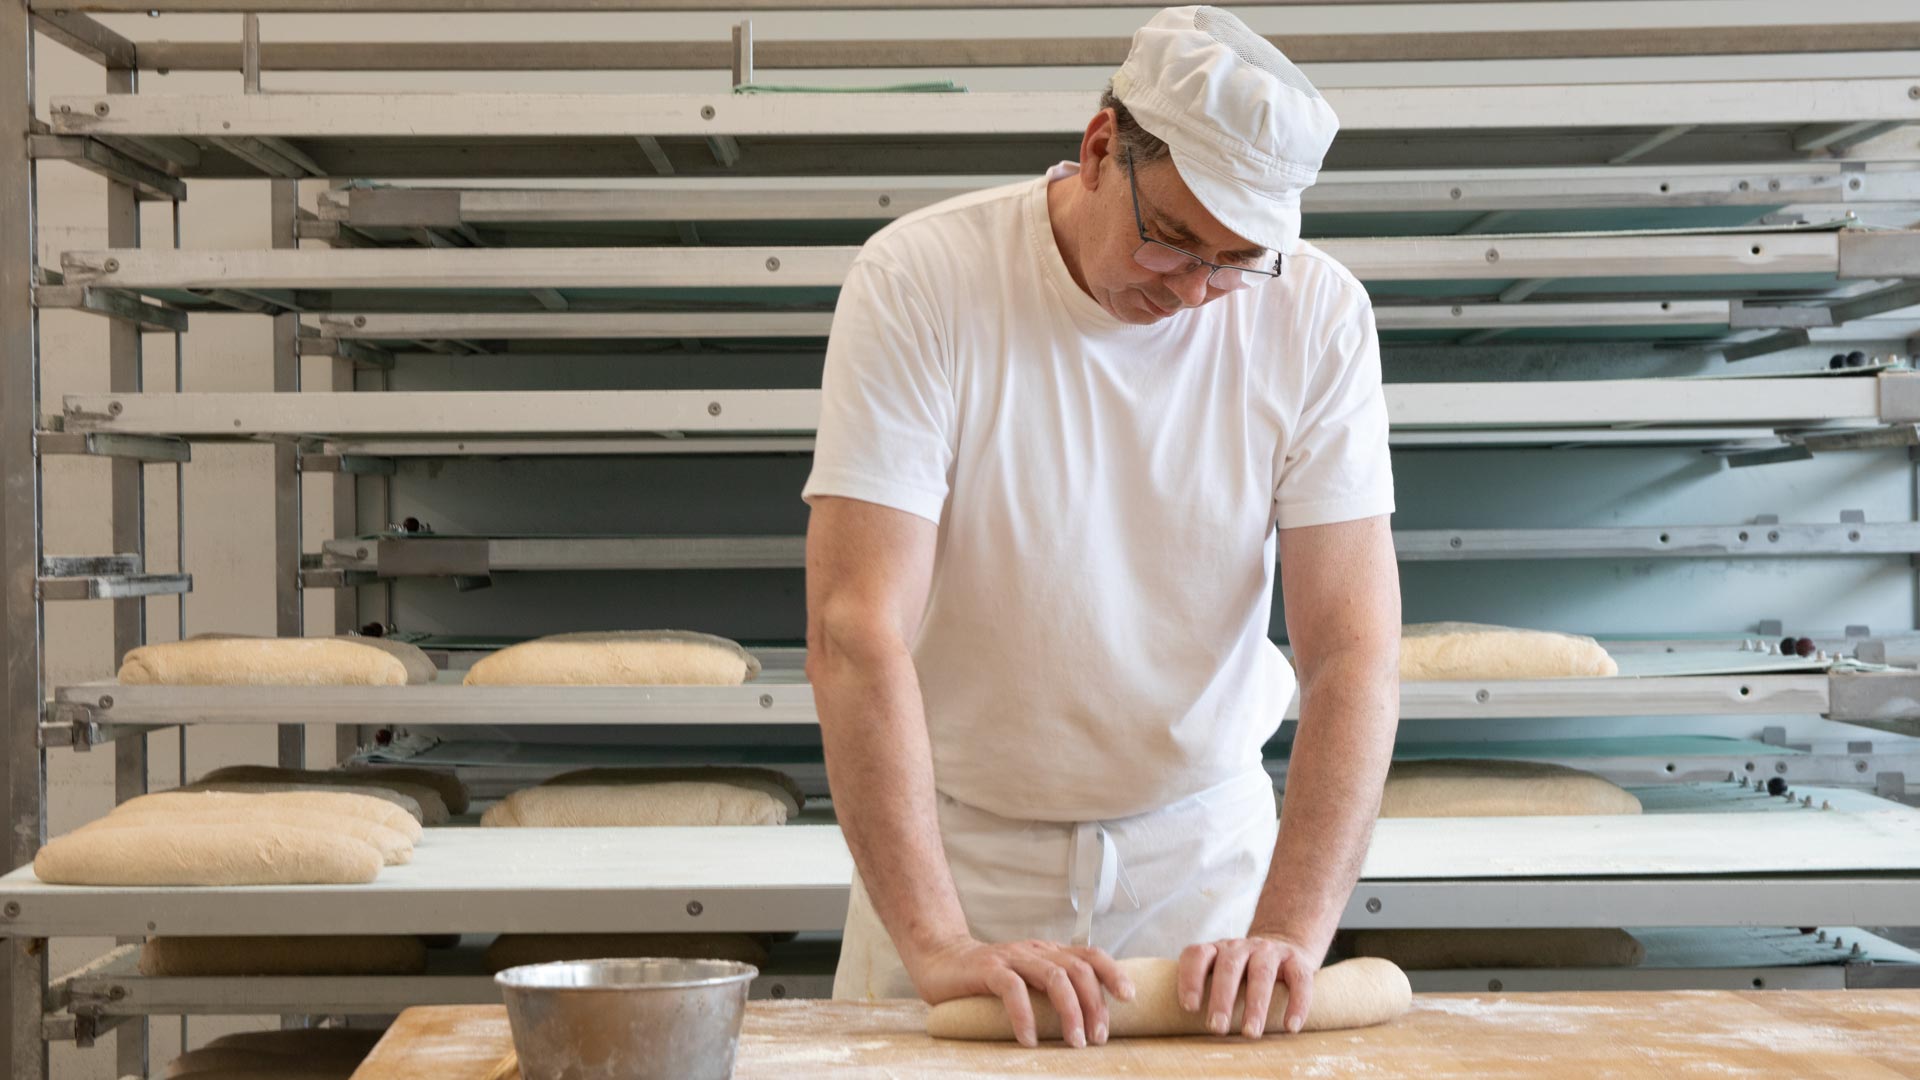 Bäcker arbeitet Teig auf und formt ihn zu Brot.